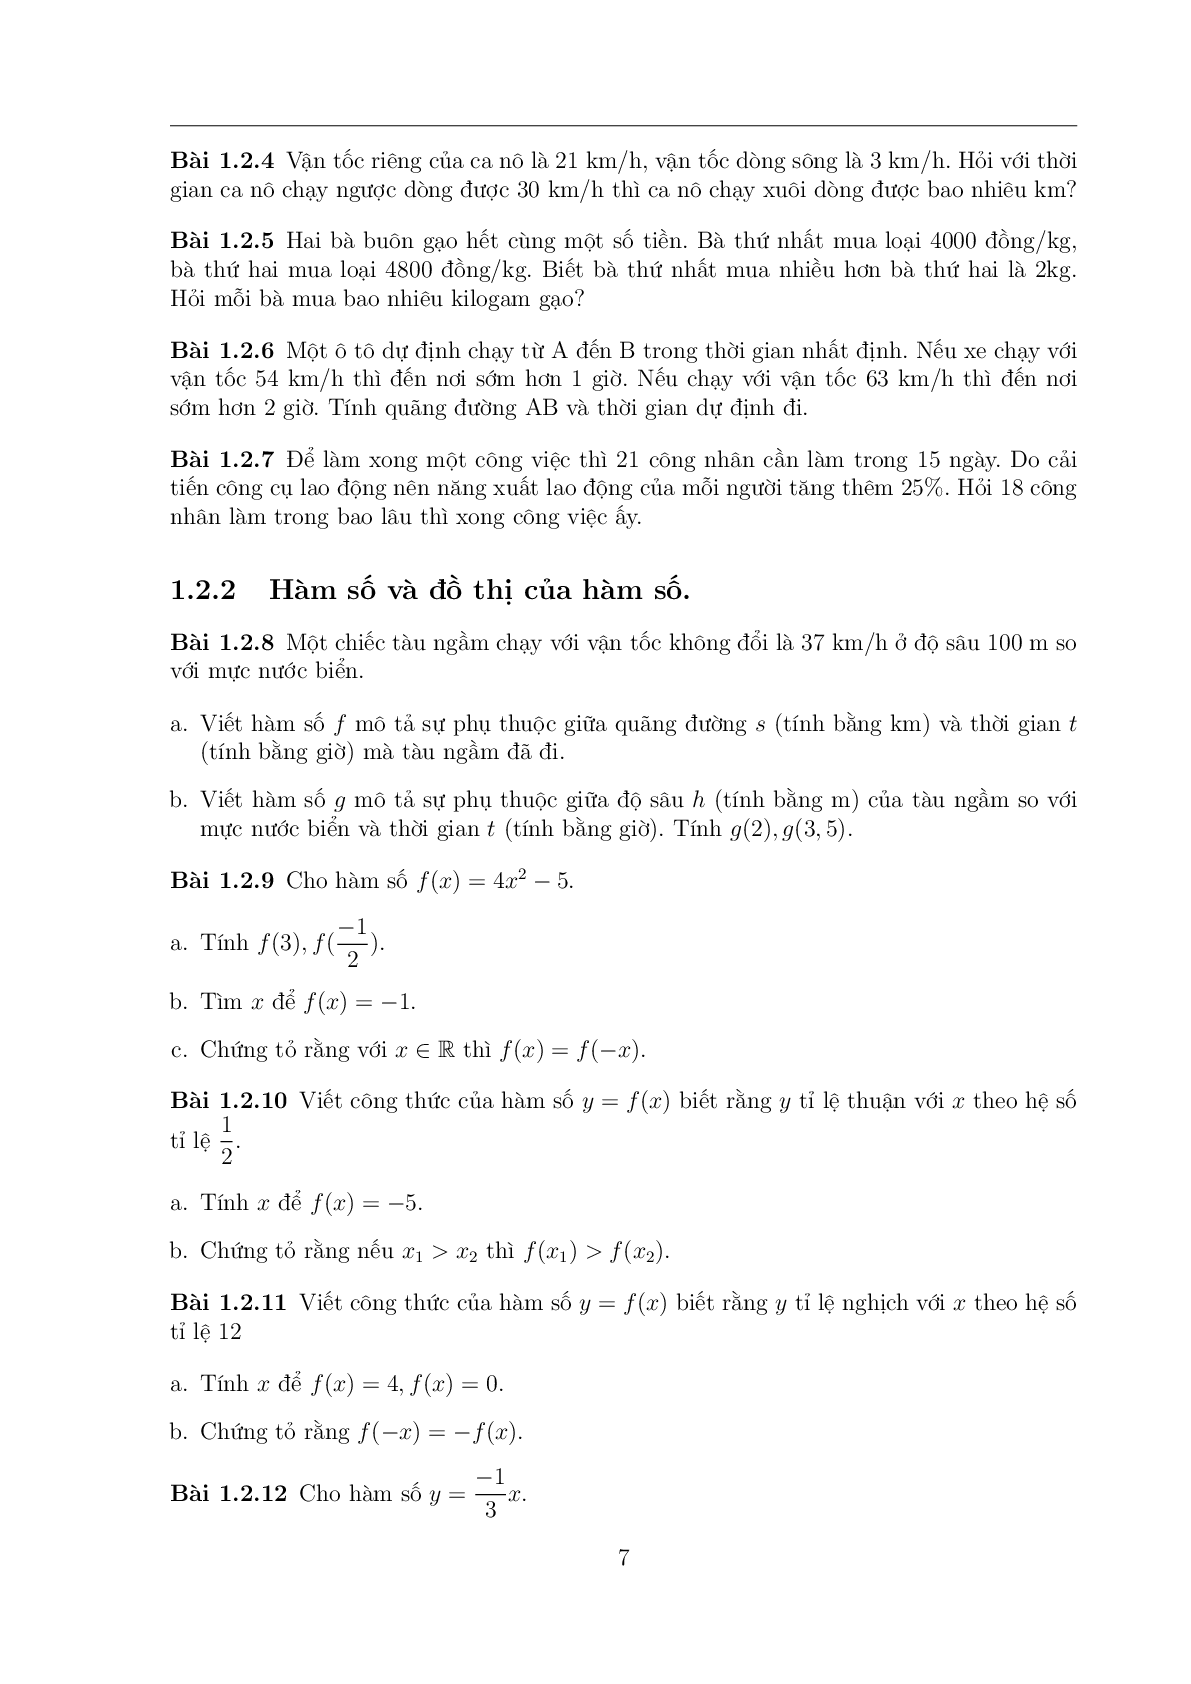 108 Bài toán chọn lọc Toán 7 có đáp án (trang 6)